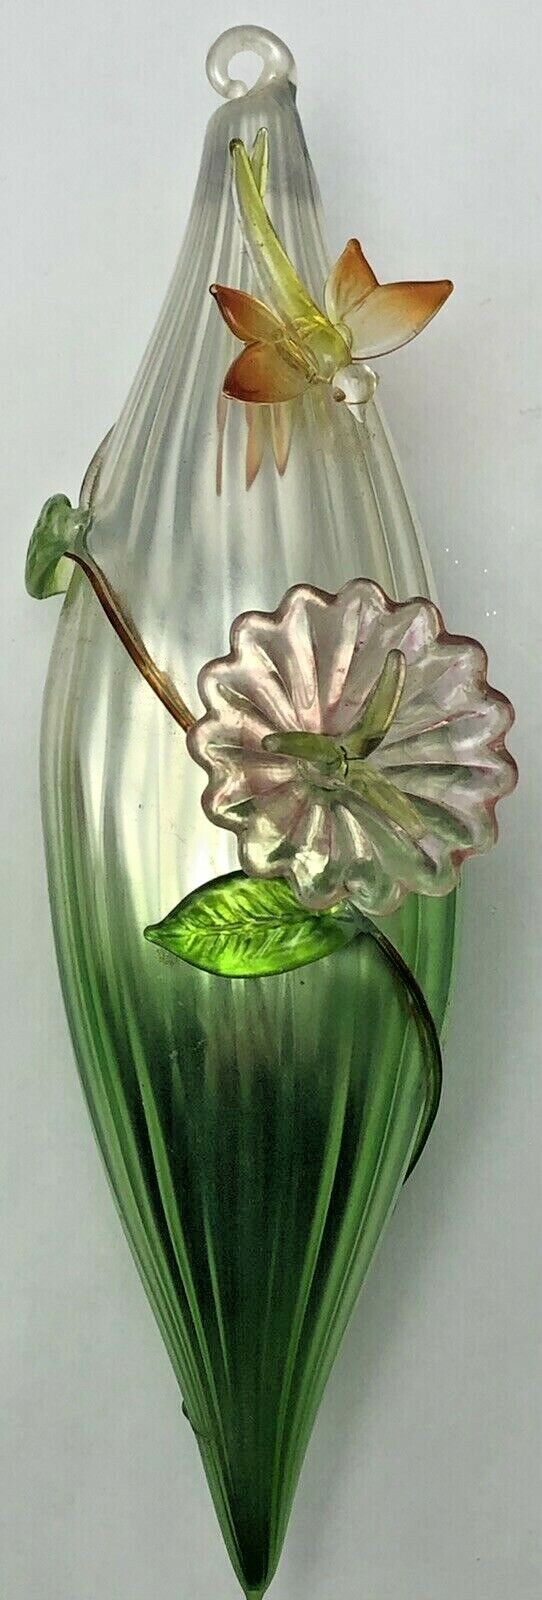 Vintage Ribbed Teardrop Glass Christmas Ornament Embellished Flower Dragonfly